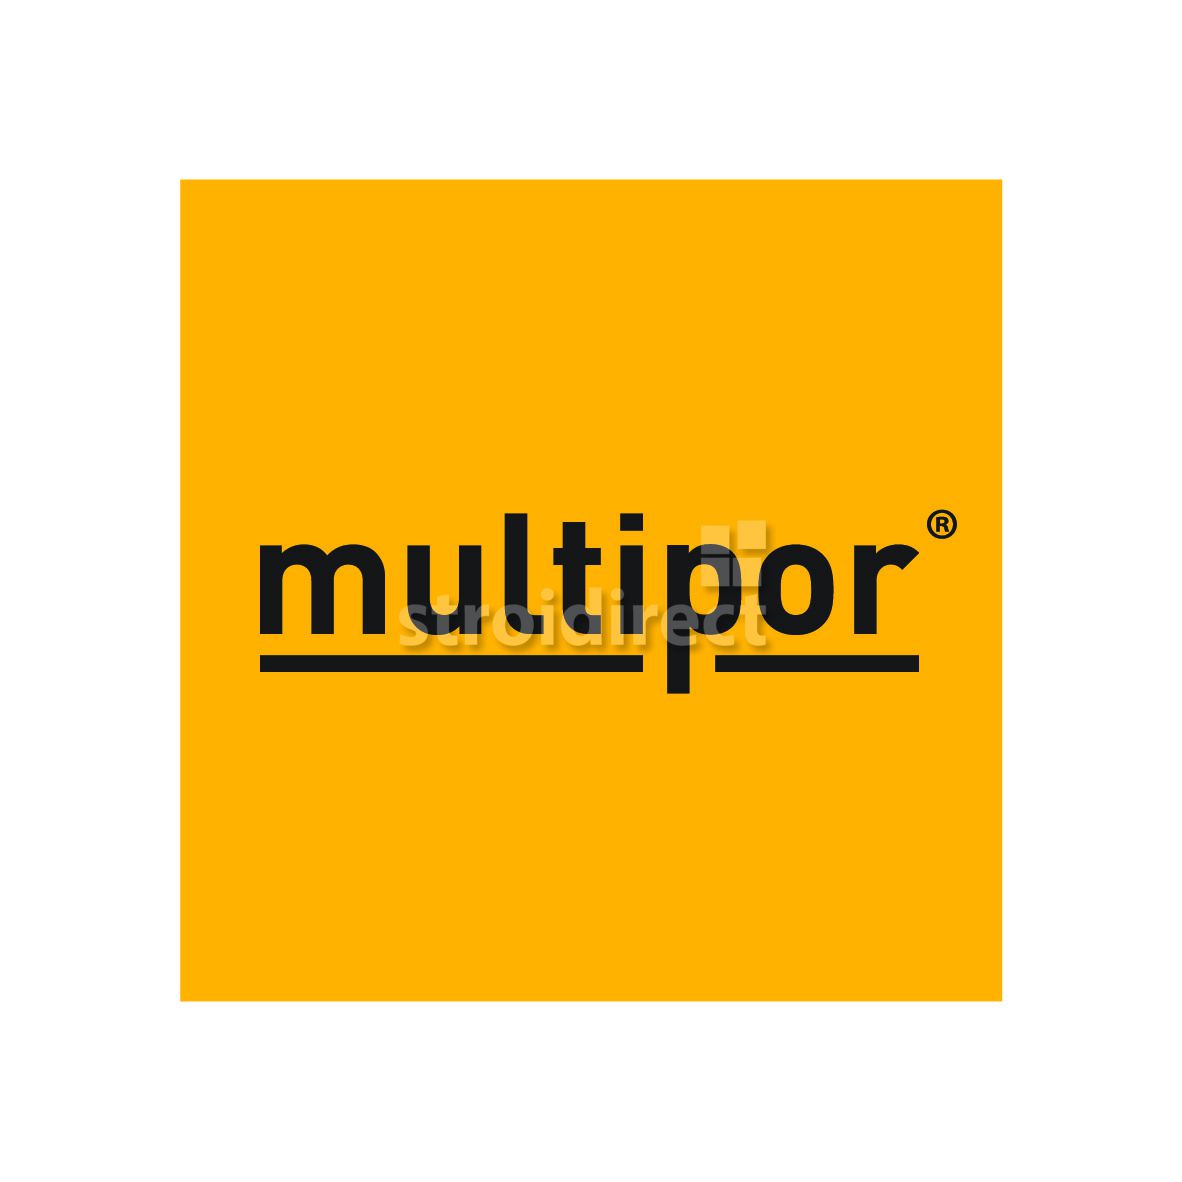 Multipor.jpg